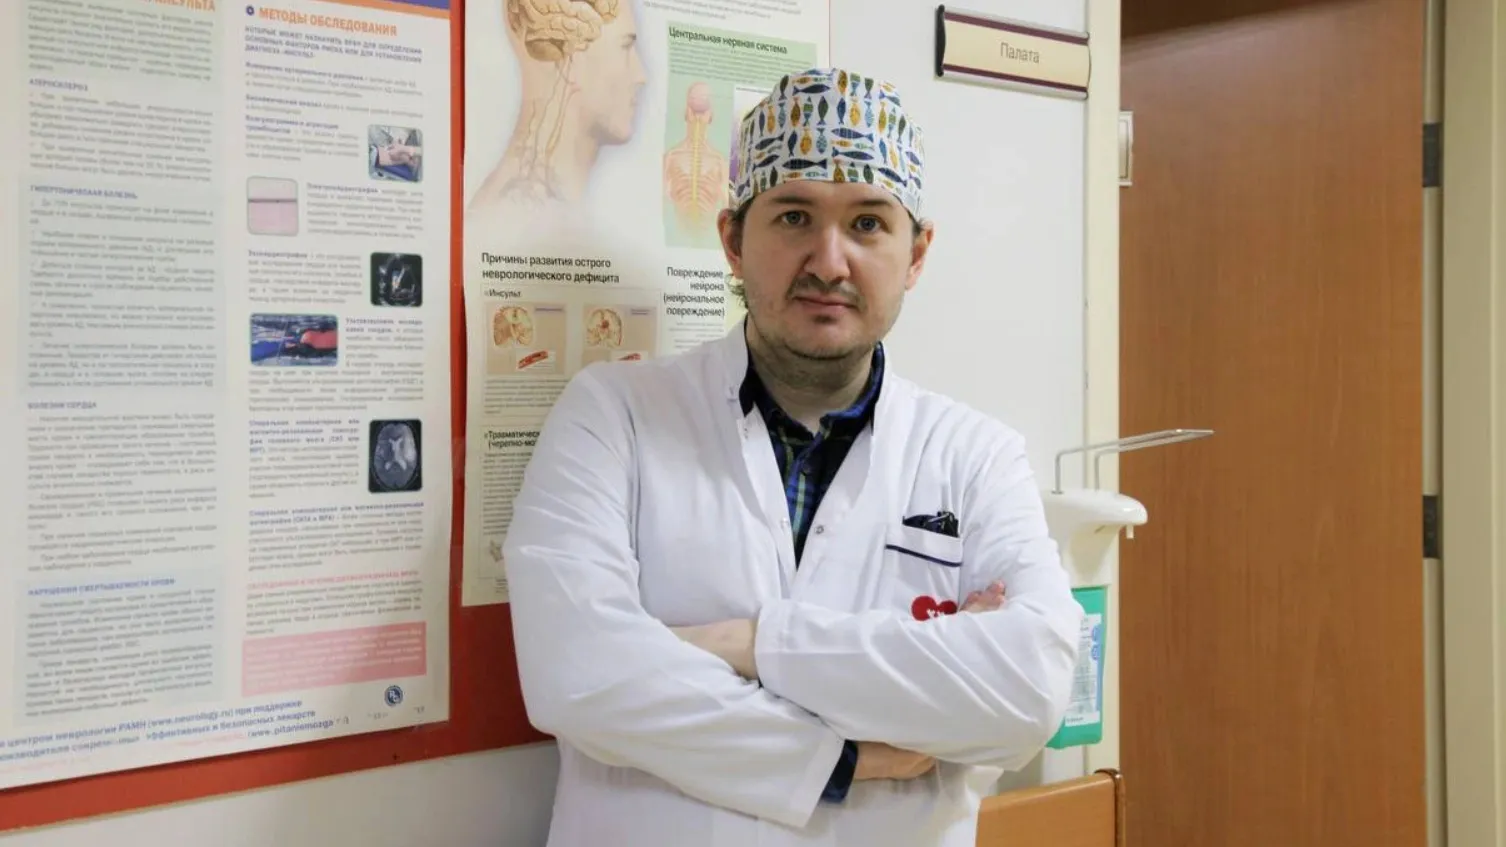 Нейрохирург Дмитрий Гринюк. Фото: t.me/depzdrav89